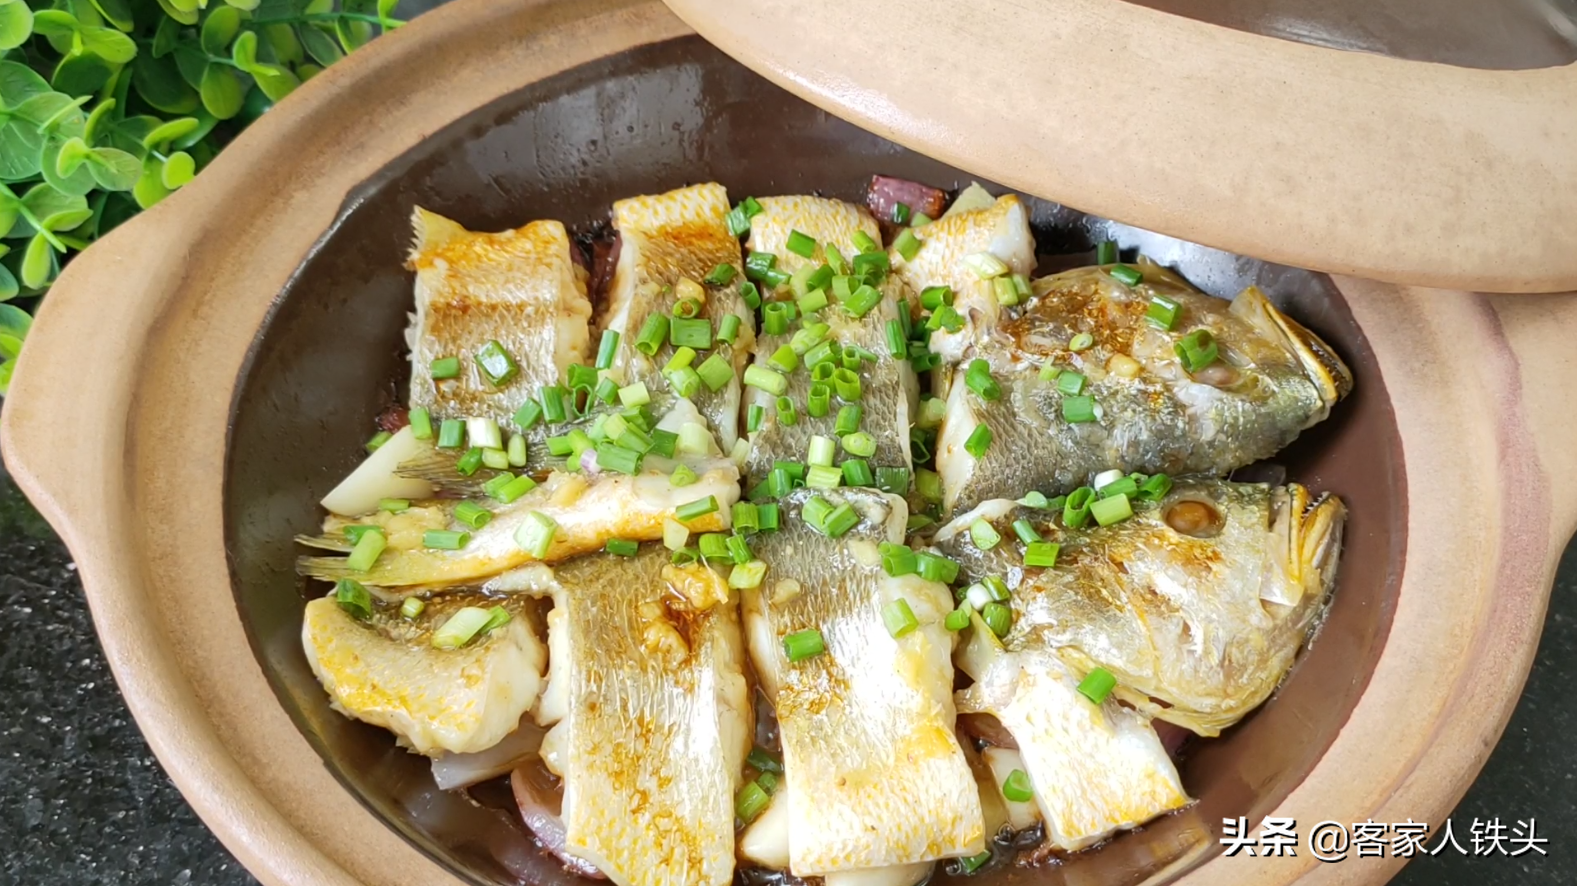 过年吃黄鱼别煎炸，切块摆入锅中，6分钟出锅，皮香肉嫩好吃过瘾